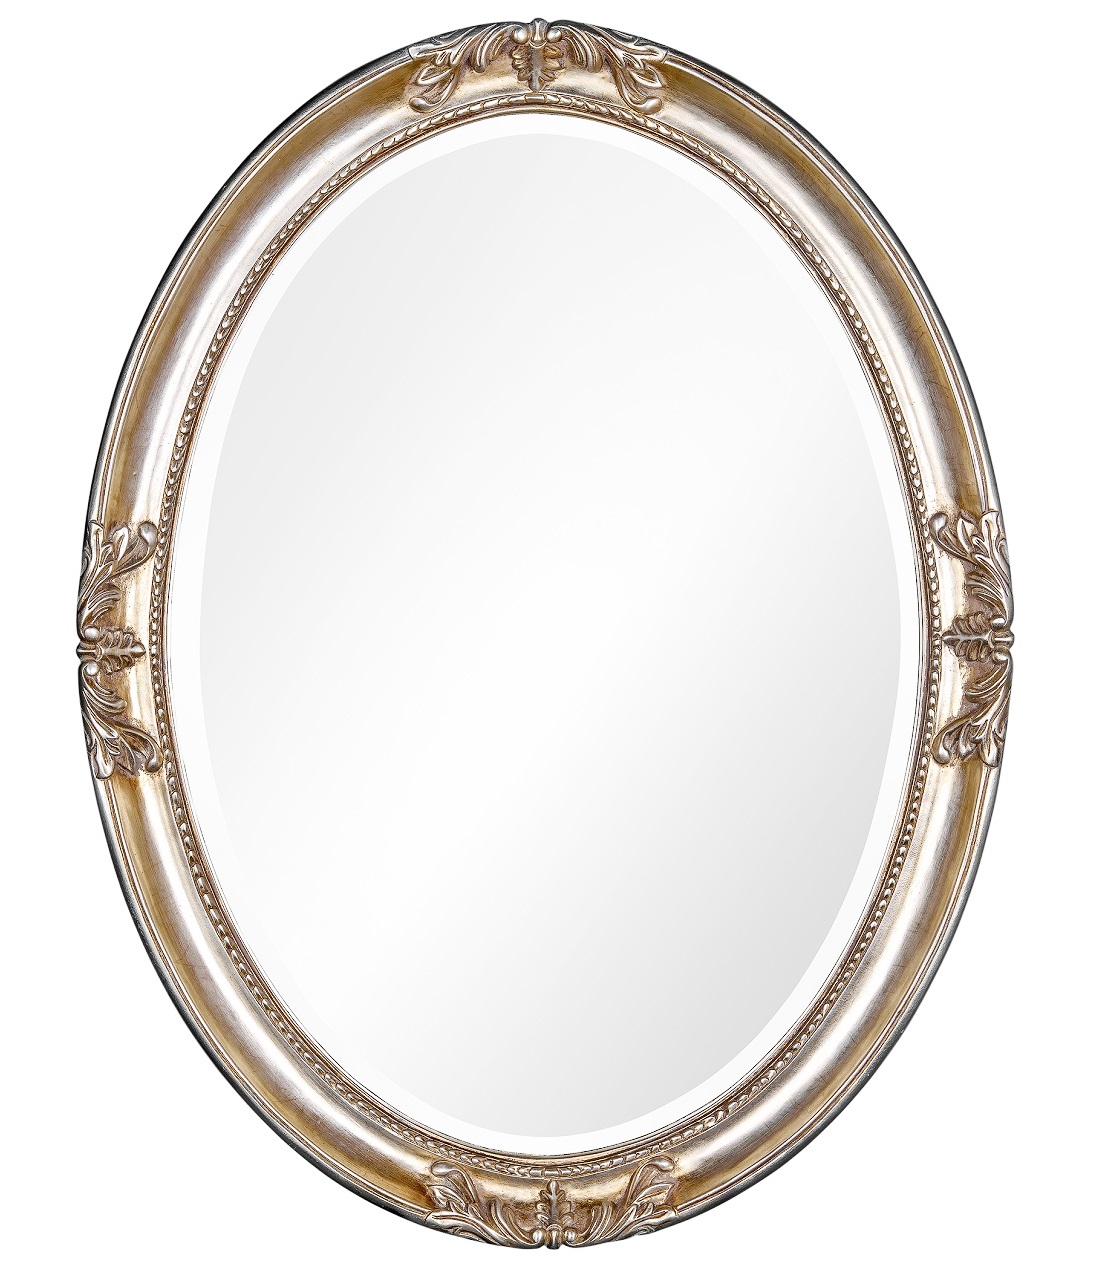 Овальное зеркало в раме Parigi Silver фото и цена, купить